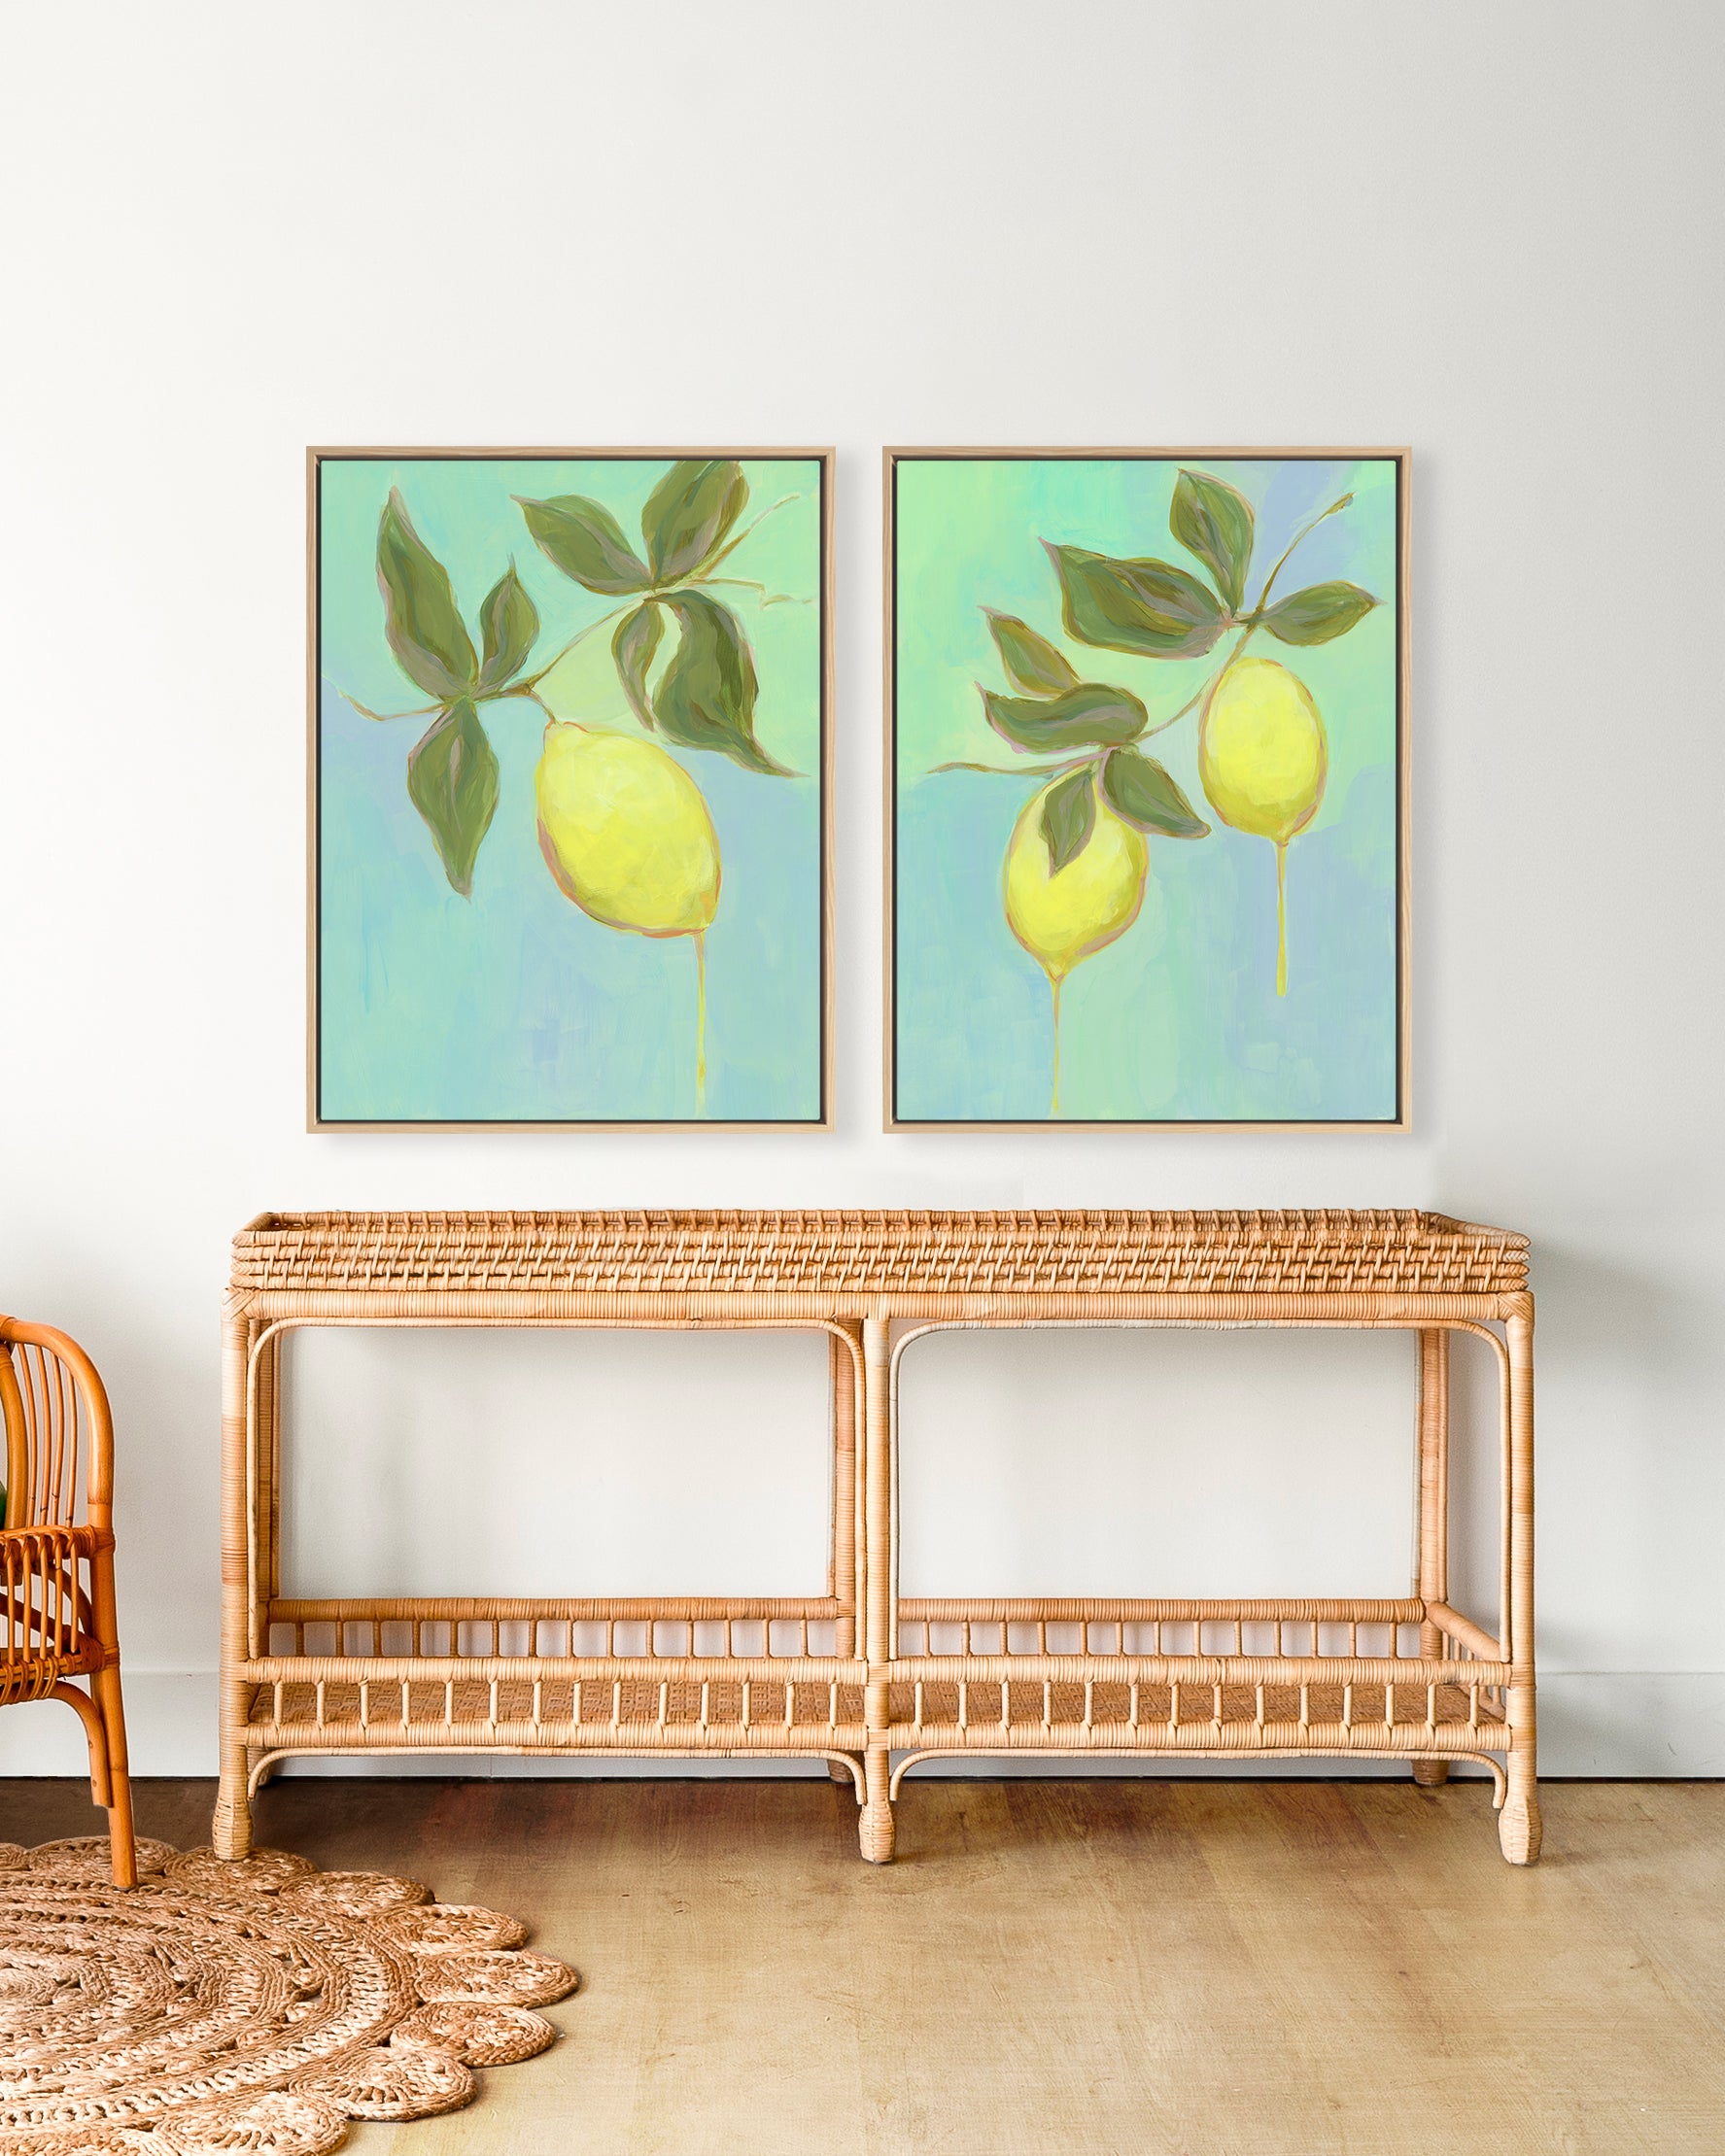 Limone Pair by Haley Knighten